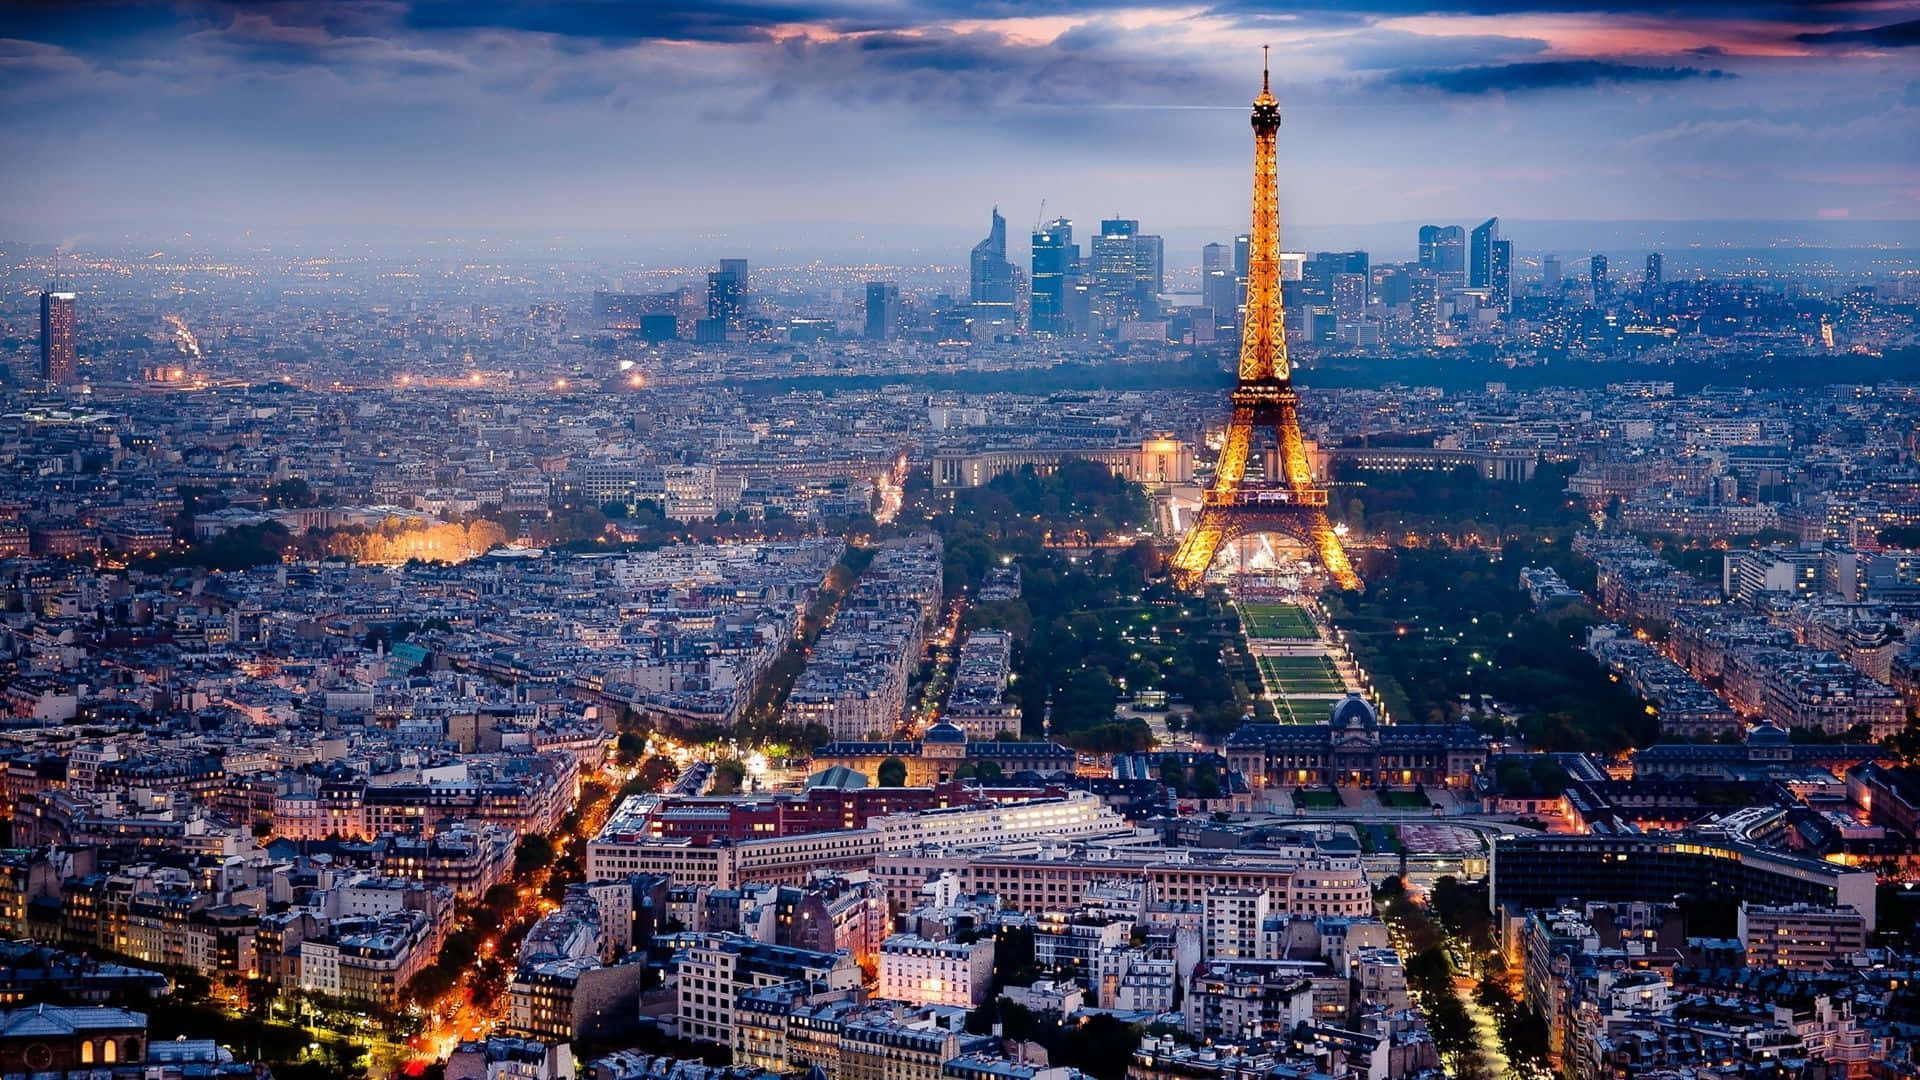 Njutav Den Natursköna Utsikten Över Eiffeltornet I Paris. Wallpaper